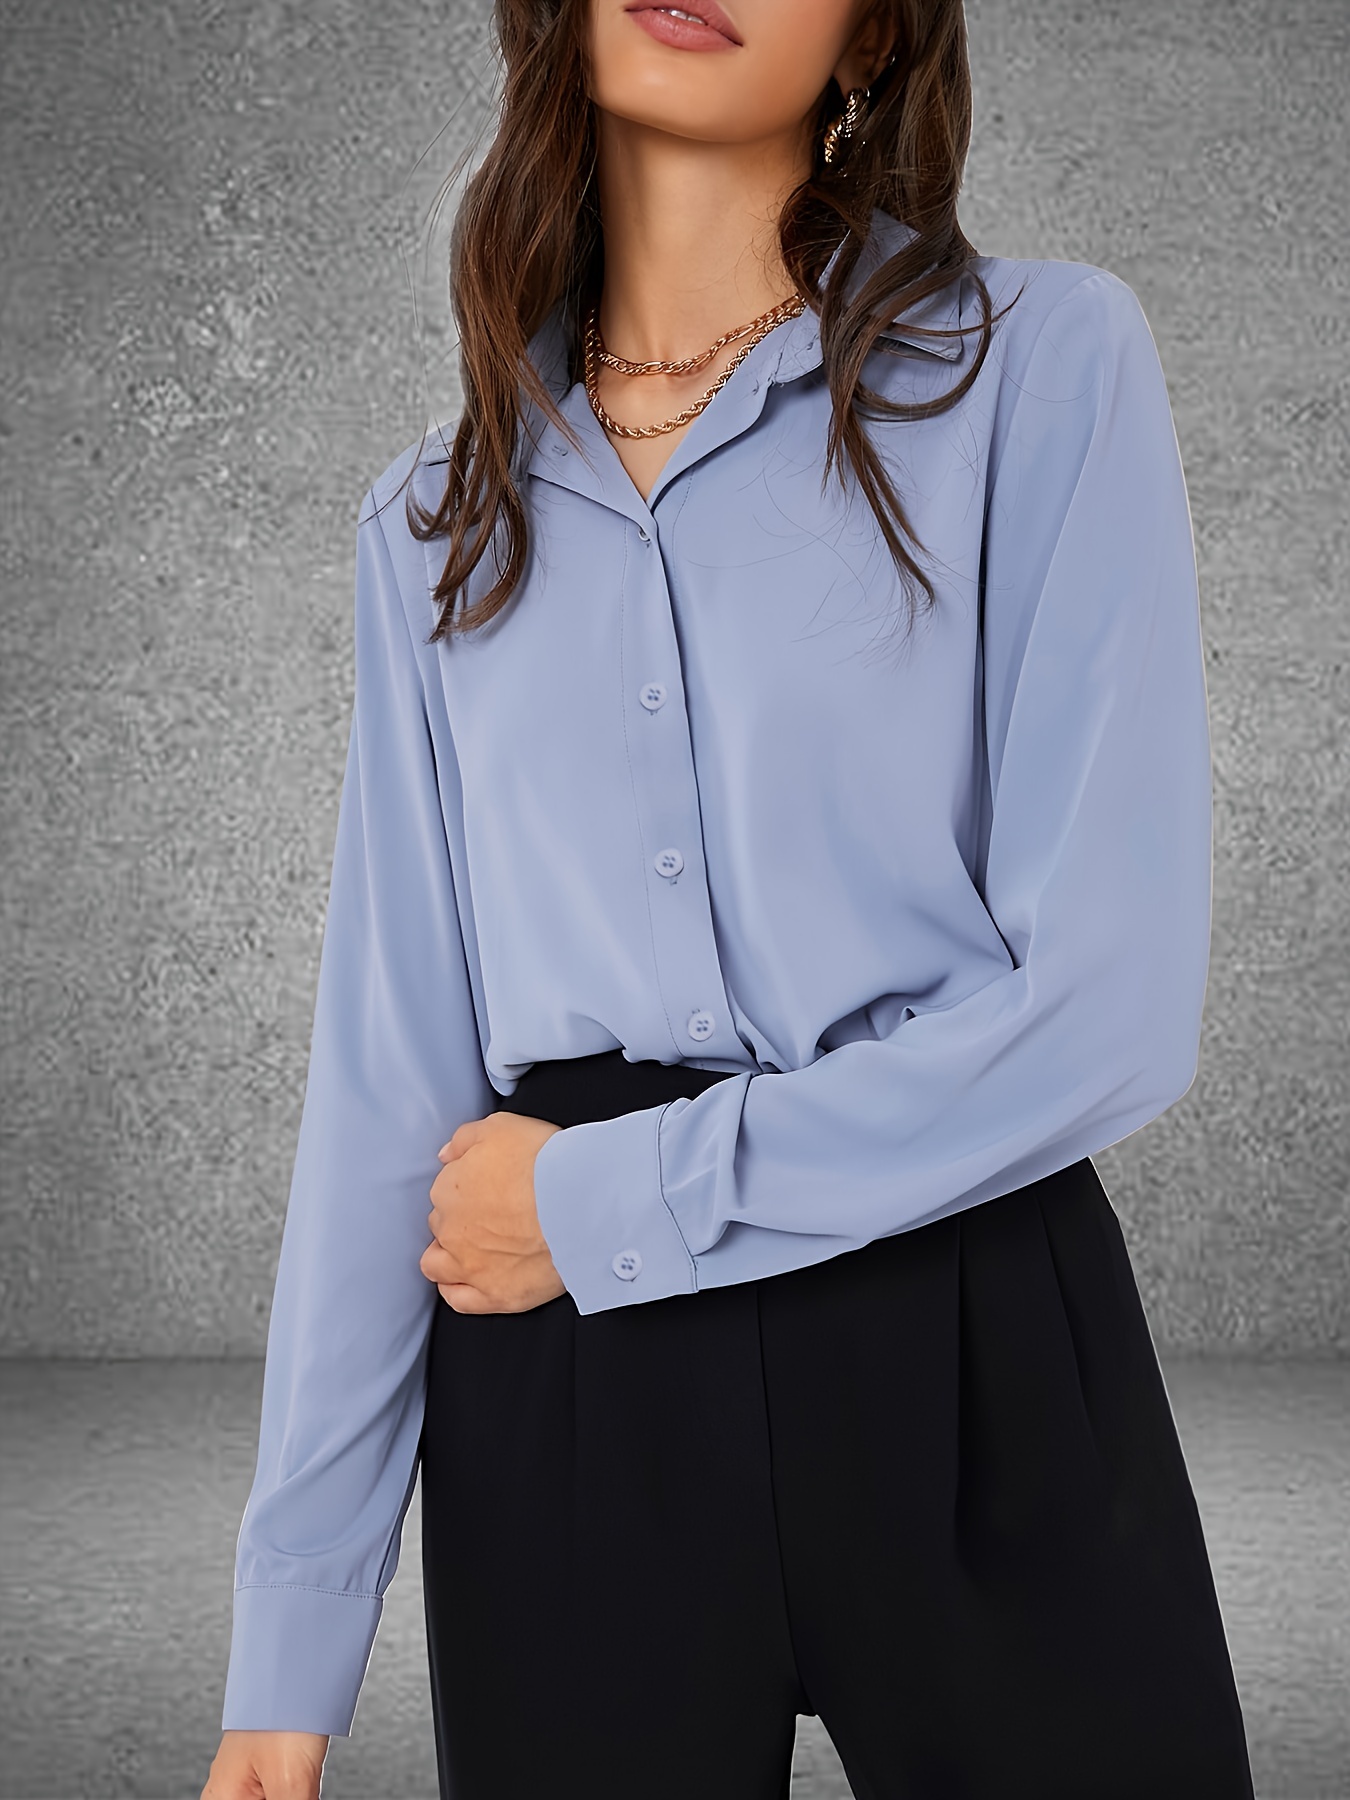 Blusa Solapa De Mangas Largas Para Mujer Camisa De Trabajo Oficina Elegante  Moda